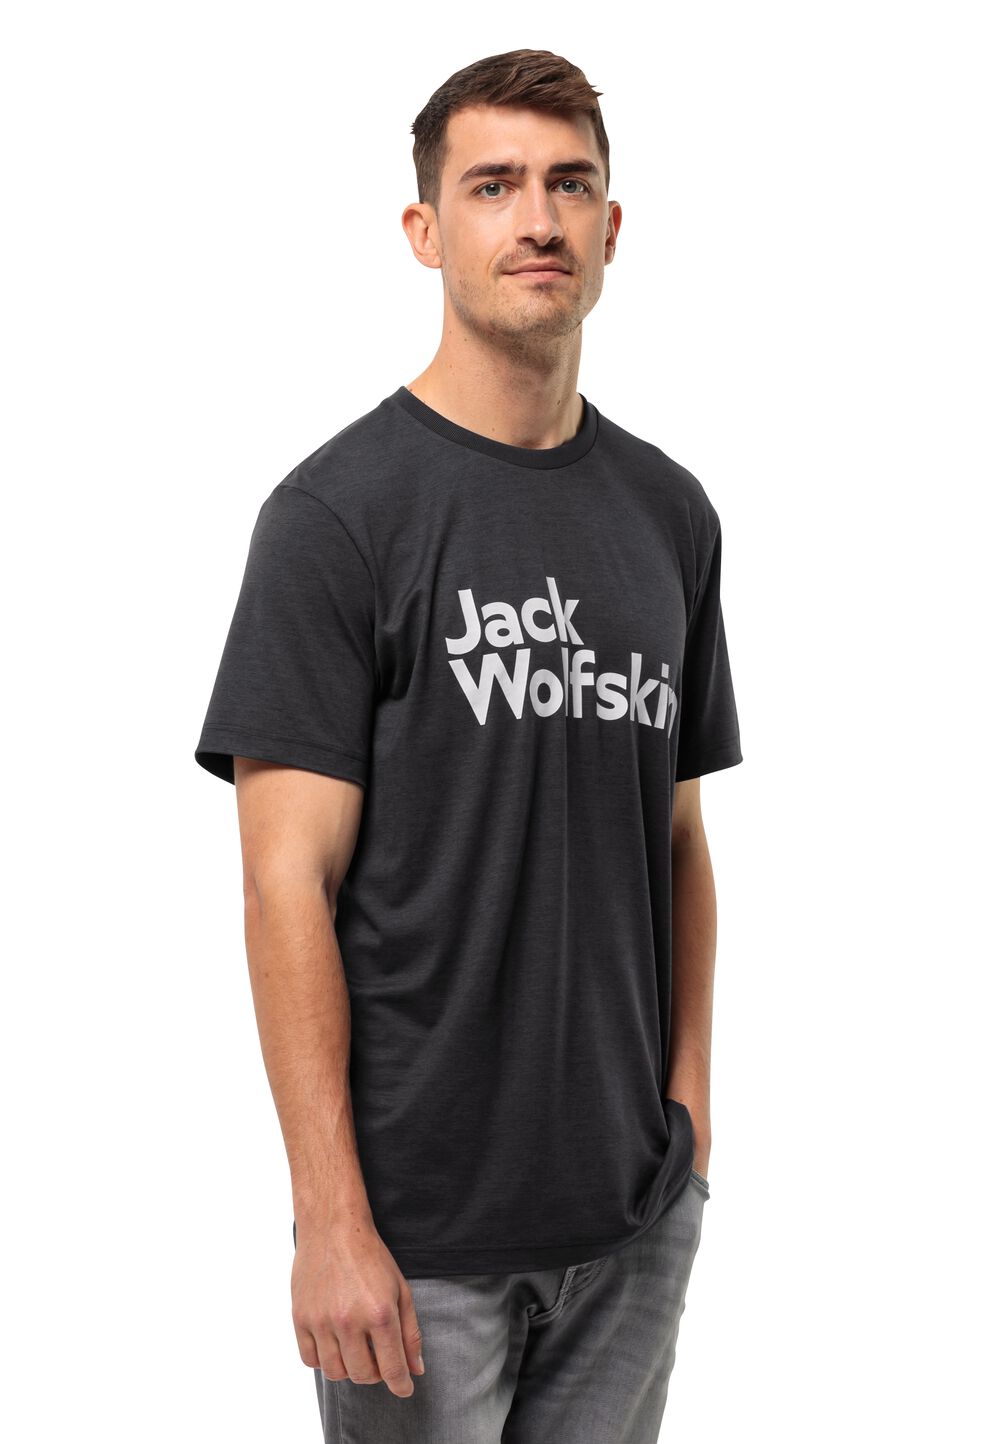 Jack Wolfskin Funktionsshirt Herren Brand T-Shirt Men S schwarz black von Jack Wolfskin